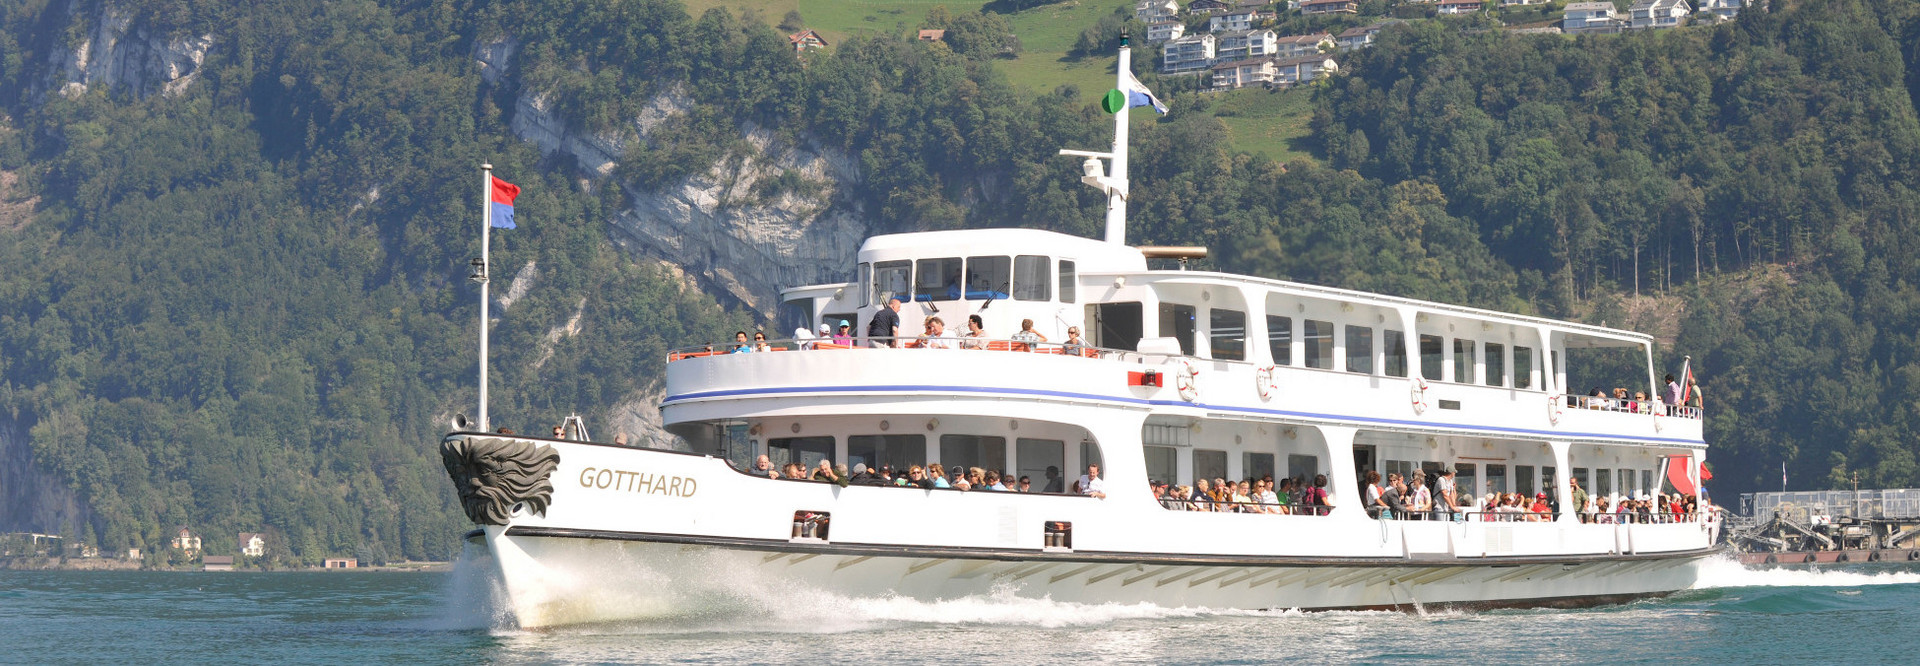 Das Motorschiff Gotthard fährt an einem schönen Sommertag auf dem Vierwaldstättersee.